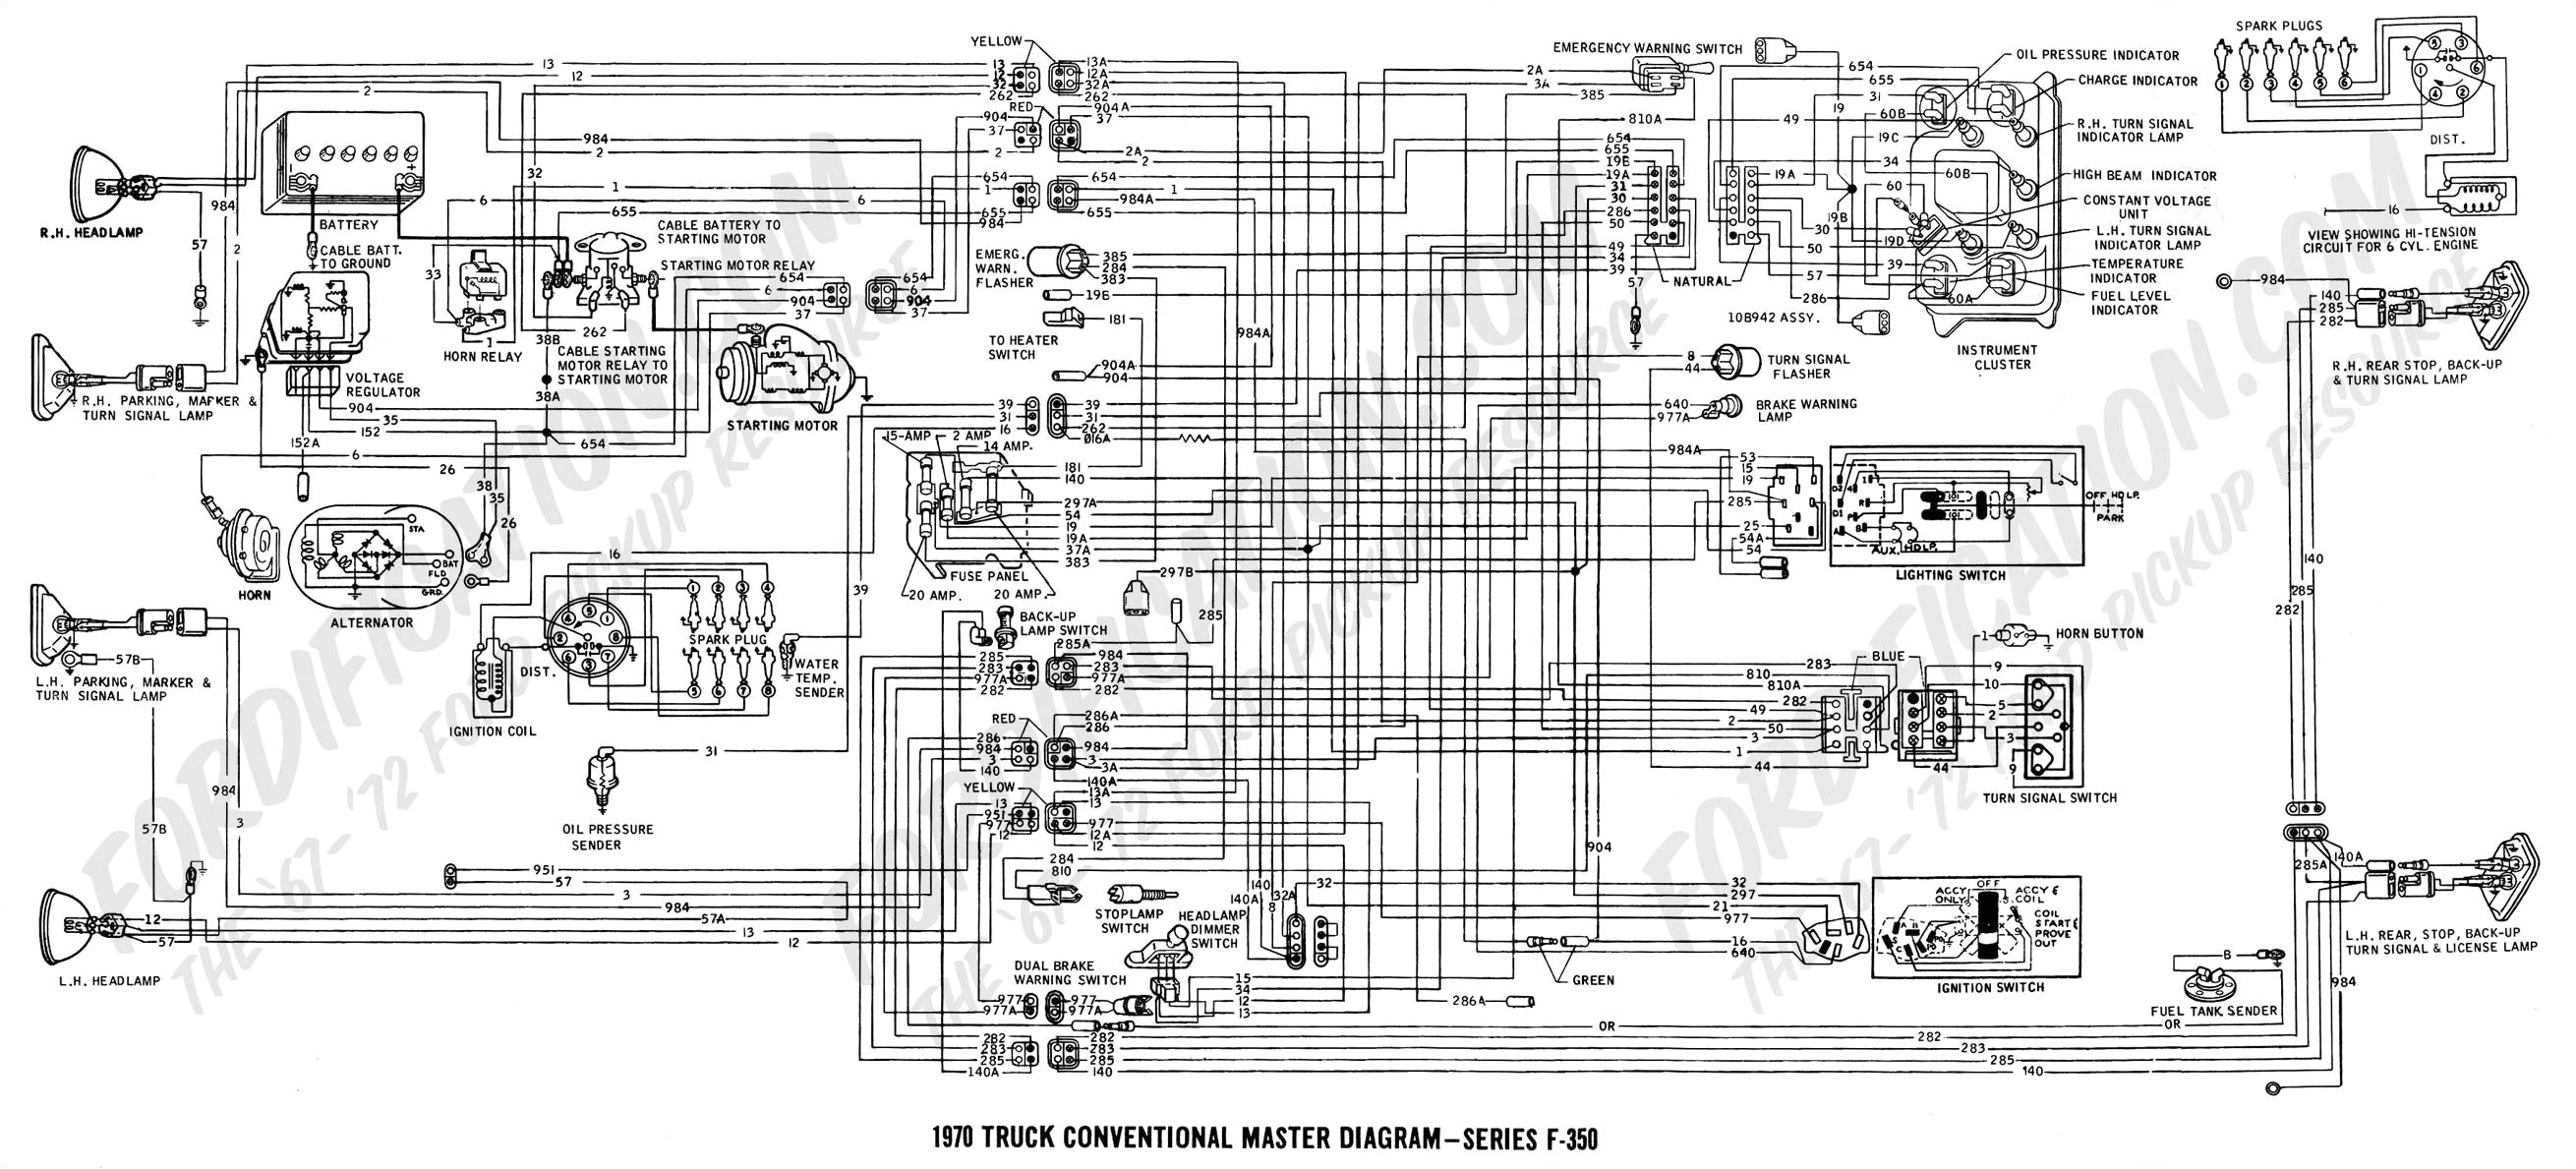 97 f350 wiring diagram wiring diagram sheet 1997 ford f350 wiring diagram wiring diagram inside 1997